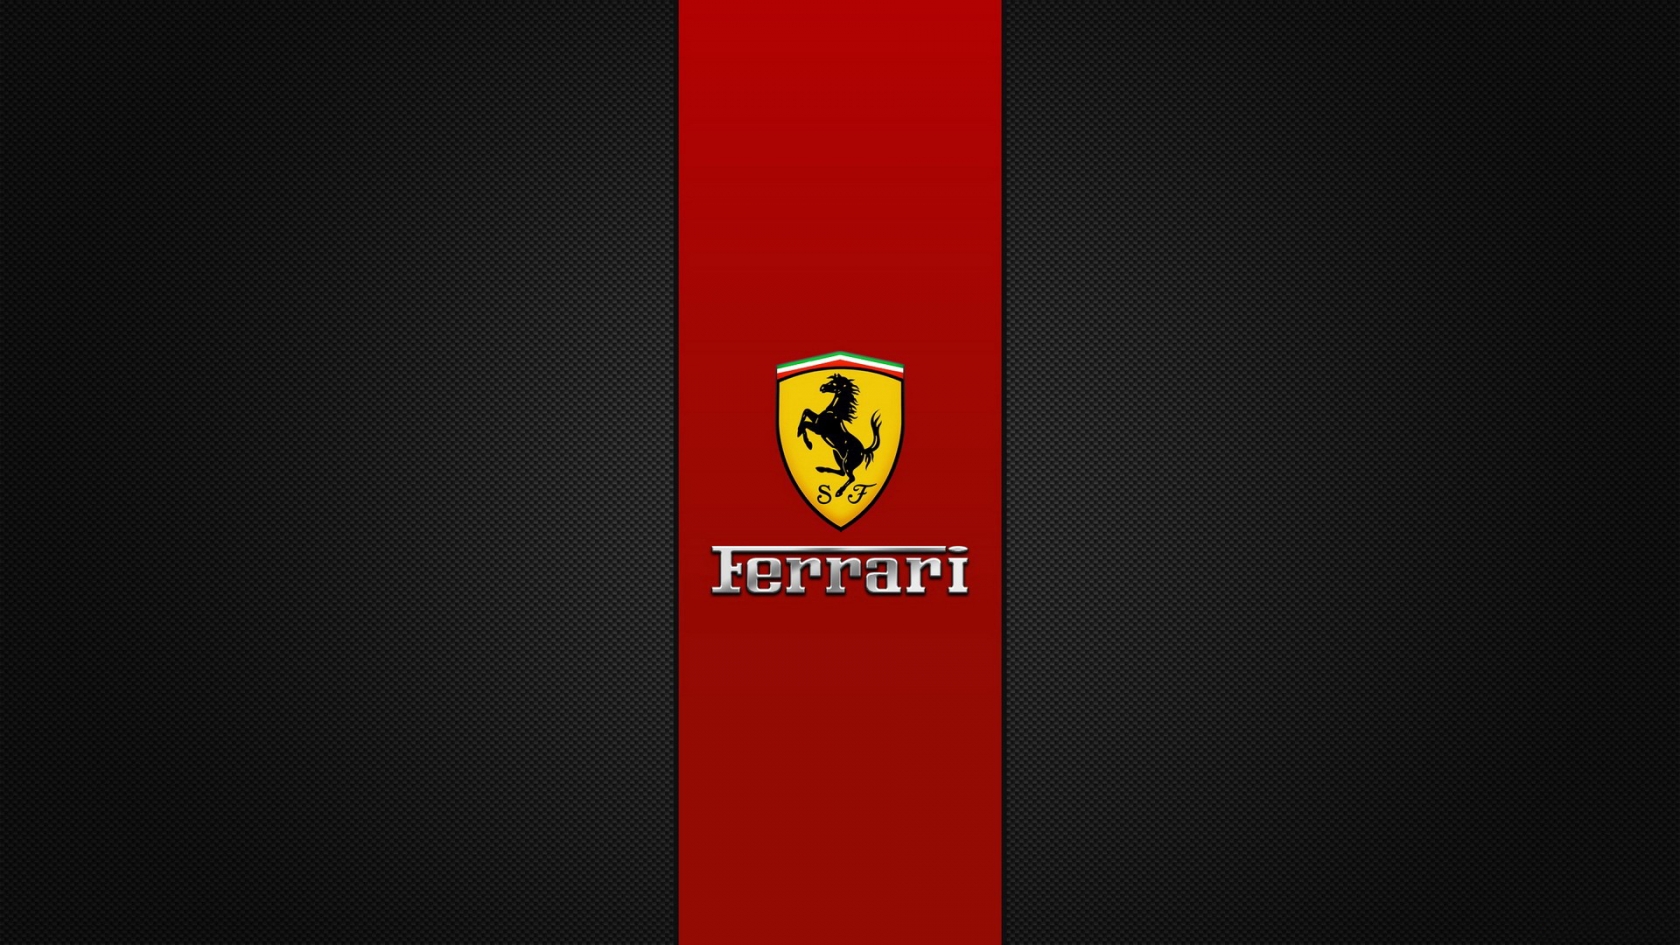 Ferrari Brand Logo for 1680 x 945 HDTV resolution